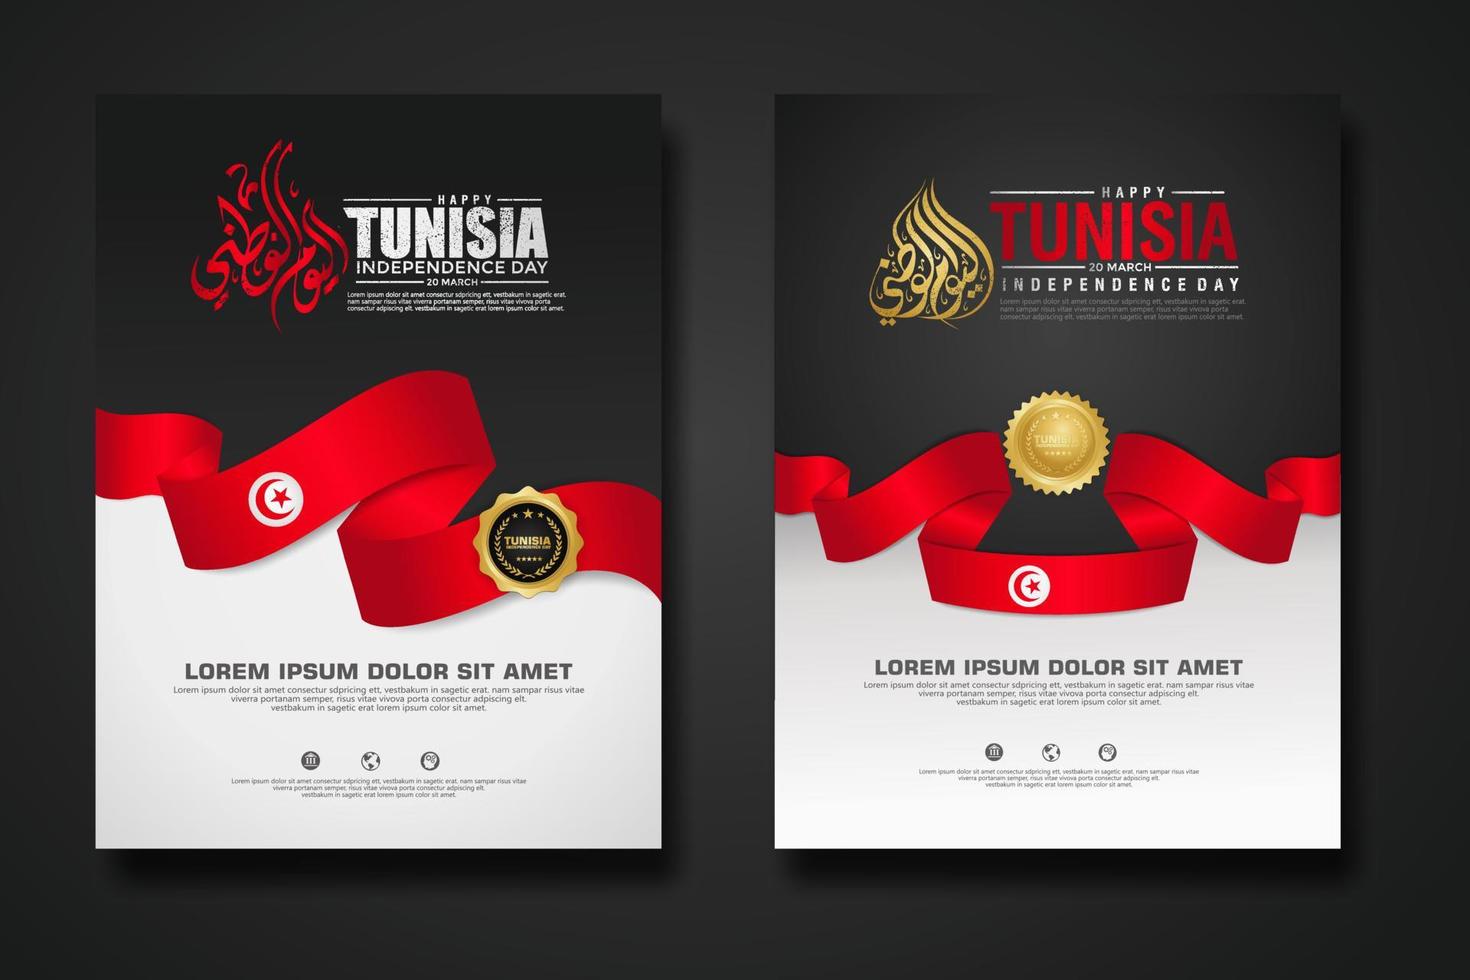 set poster design tunisia felice giorno dell'indipendenza modello di sfondo vettore